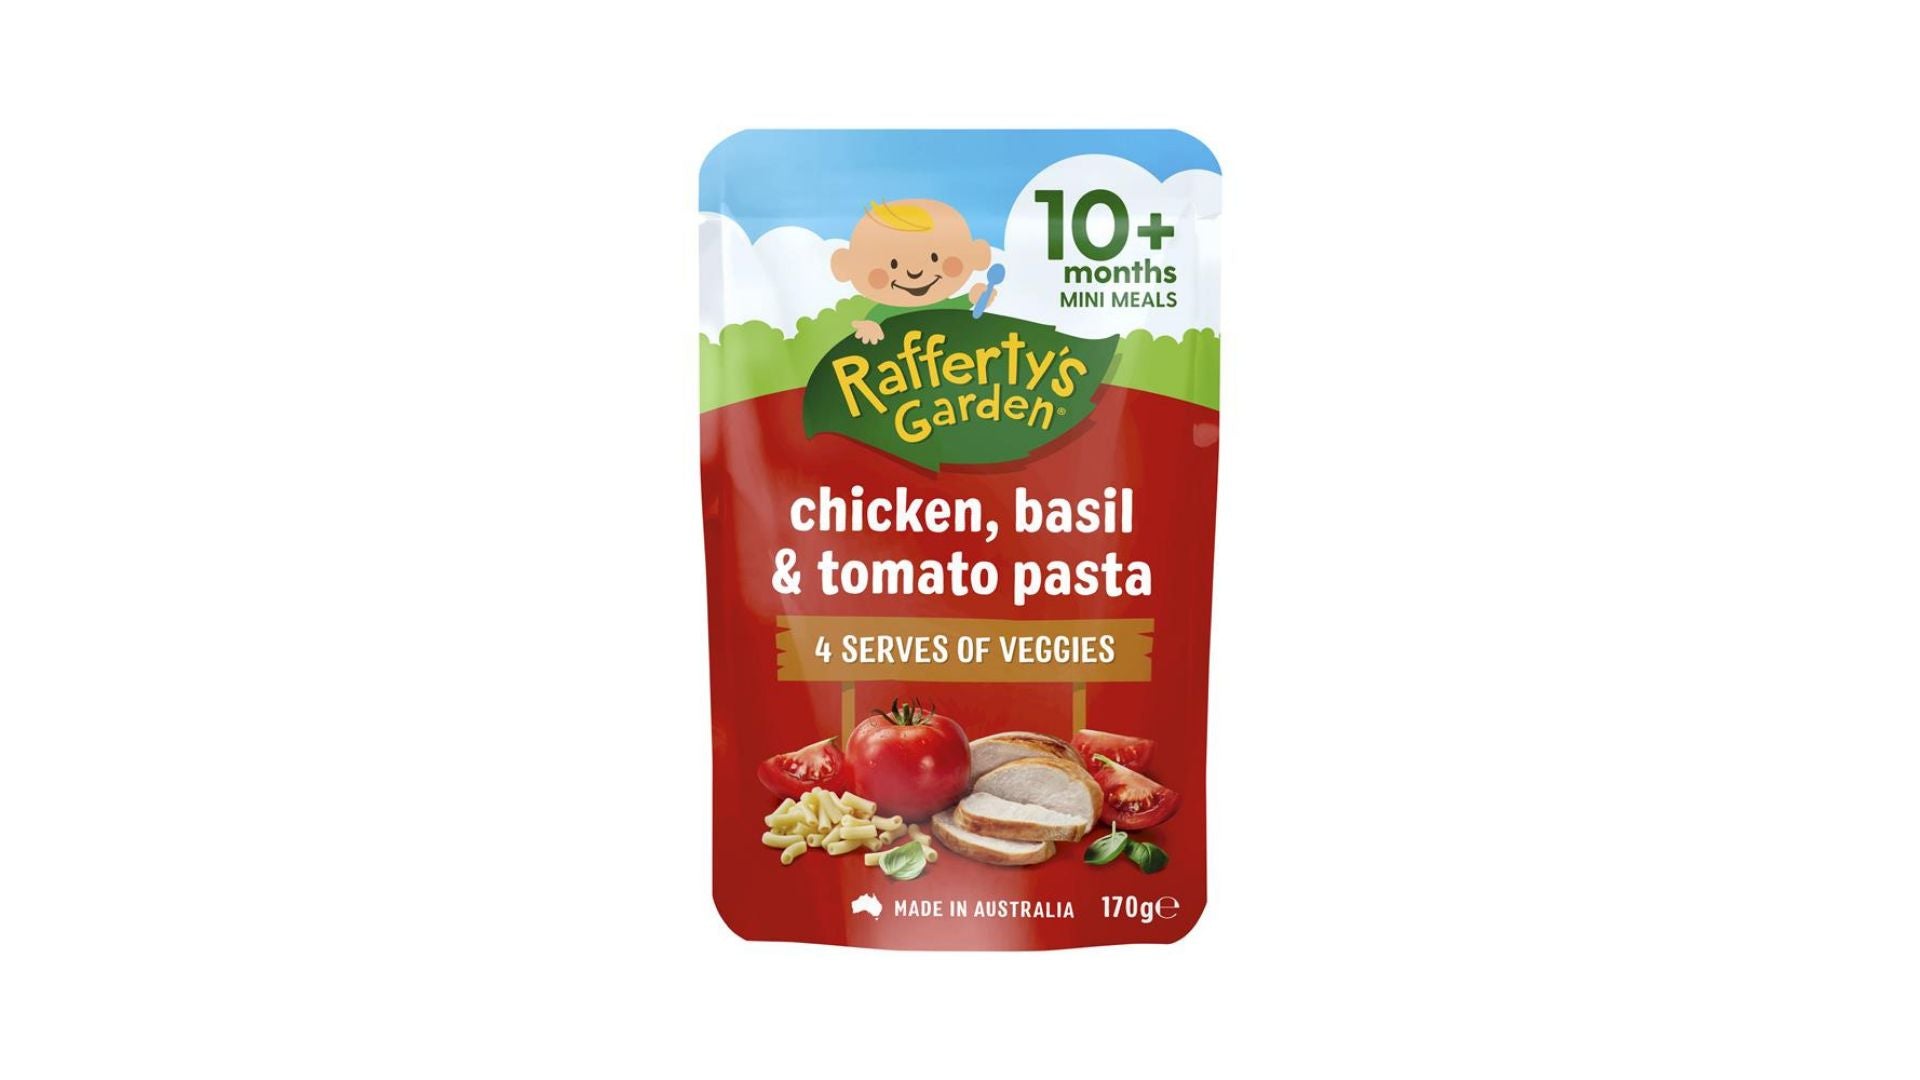 Rafferty's Garden Baby Food Pouch Chicken, Basil & Tomato Pasta 170g